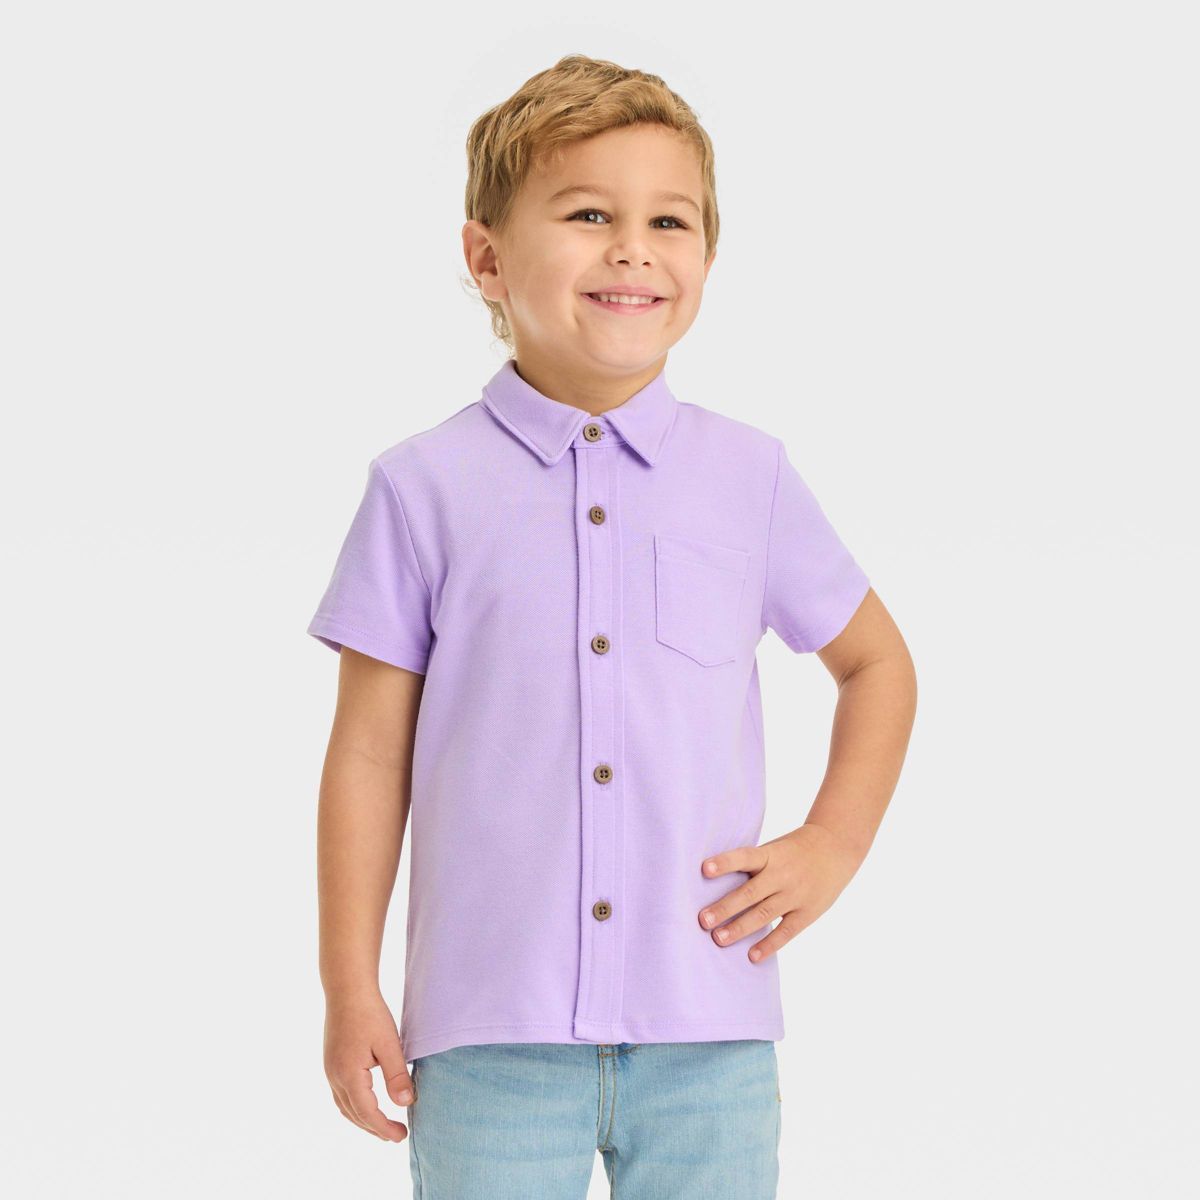 Toddler Boys' Pique Knit Shirt - Cat & Jack™ Lavender 18M | Target